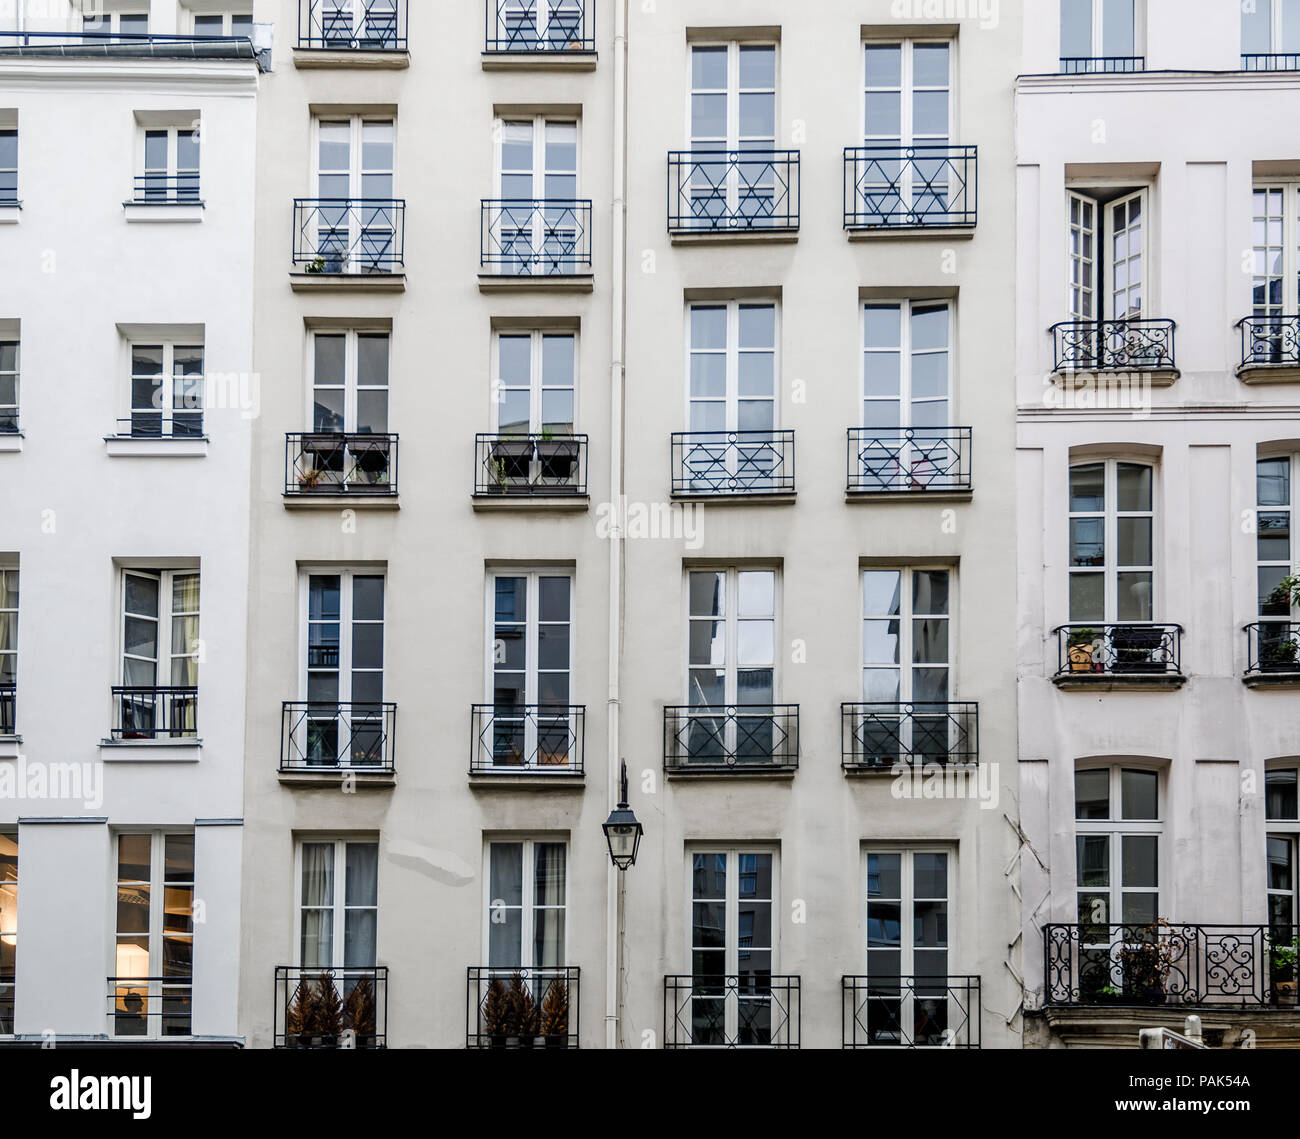 Les façades historiques avec balcons ou balconettes sur de vieux immeubles parisiens classique Banque D'Images